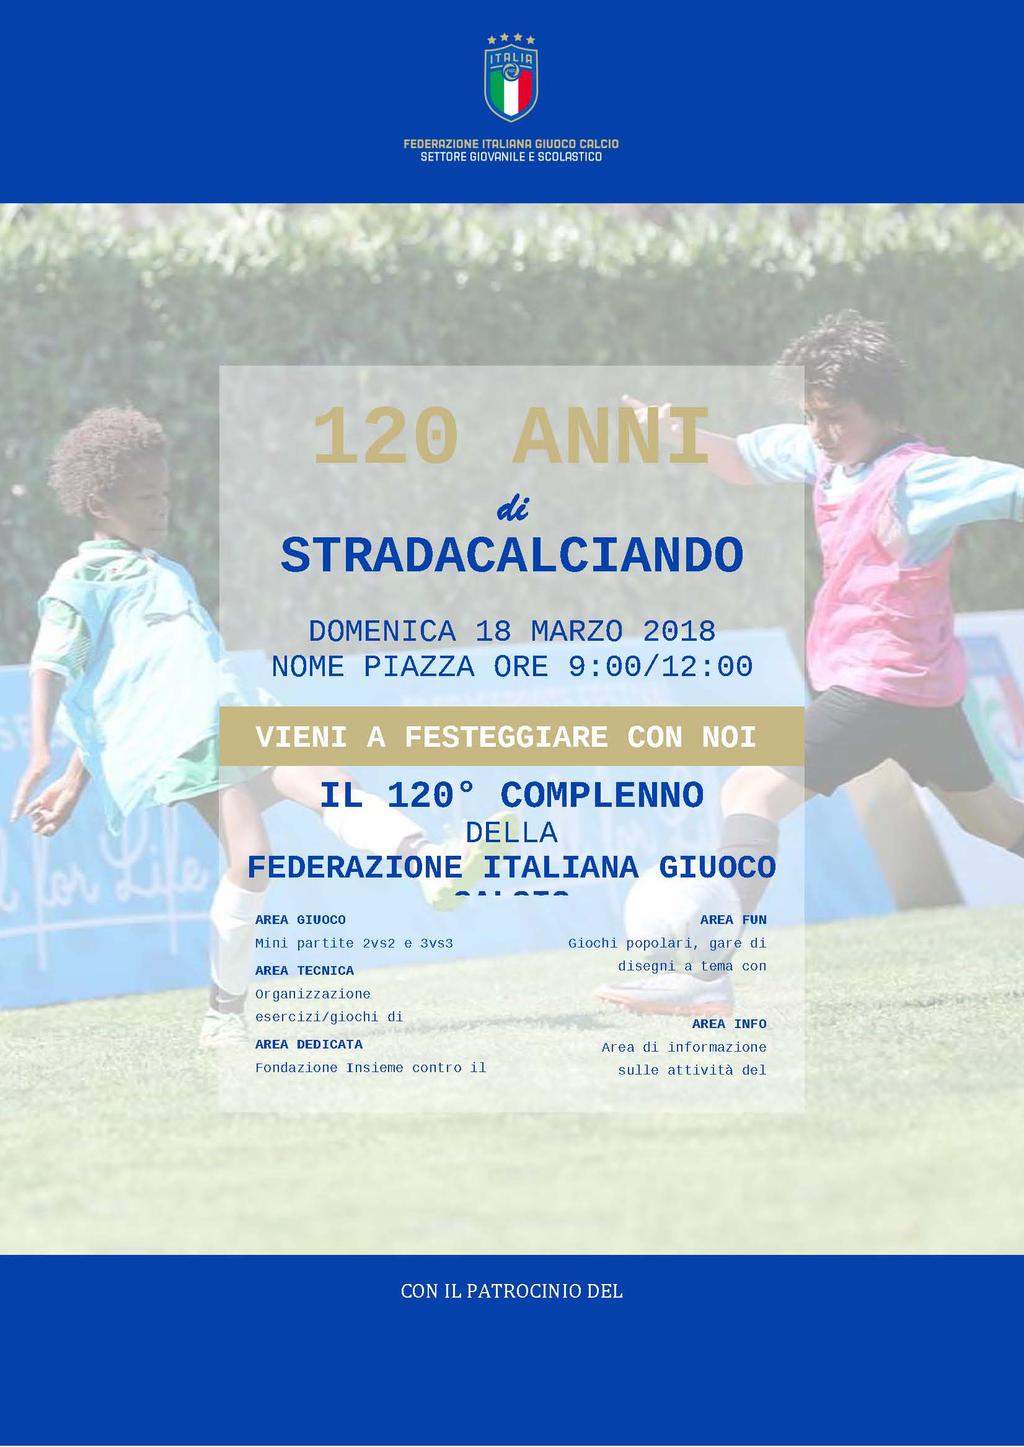 VITERBO 68/2 - MANIFESTAZIONE NAZIONALE - STRADACALCIANDO 2018 In occasione delle celebrazioni dei 120 anni della FIGC, il Settore Giovanile e scolastico, in collaborazione con il Comune di Roma,